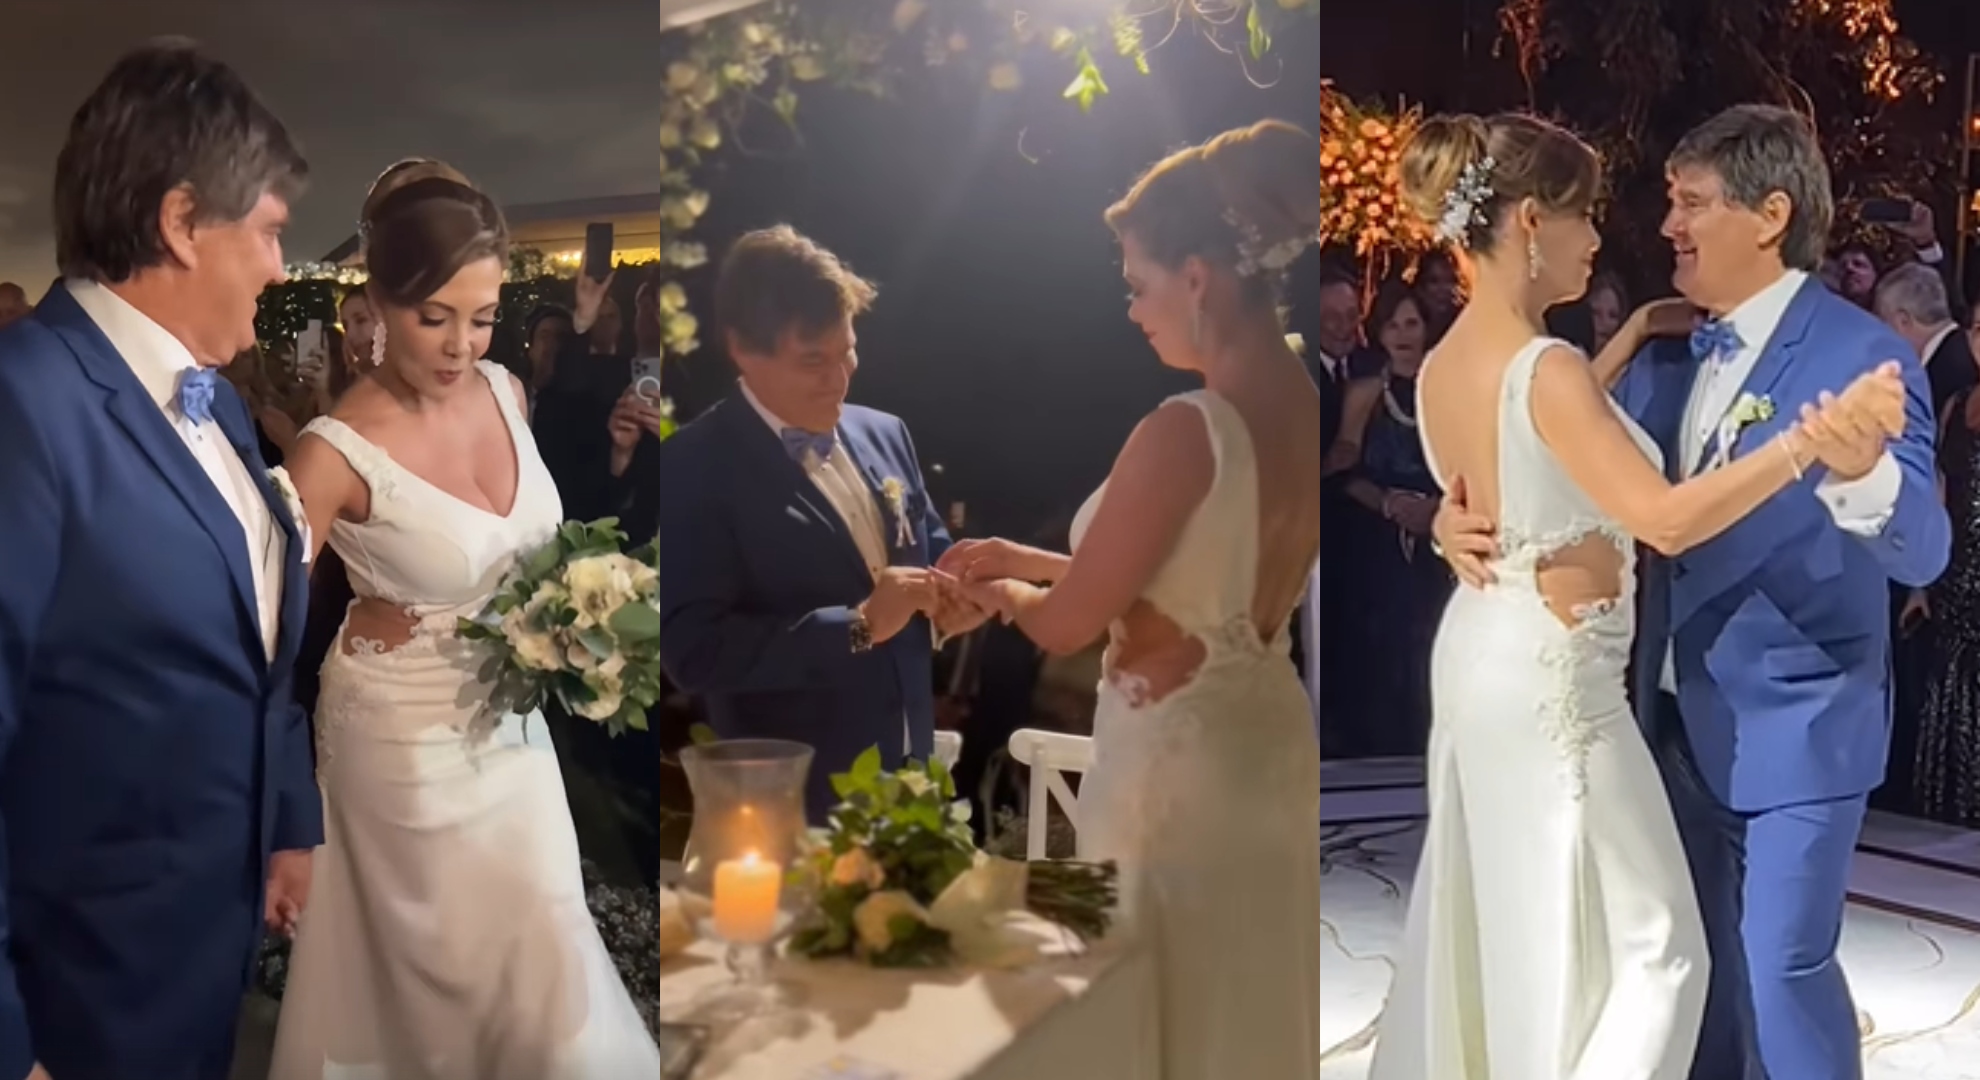 Maritere Braschi se casó con el empresario Guillermo Acha: la ceremonia, el “sí, acepto” y la lujosa fiesta